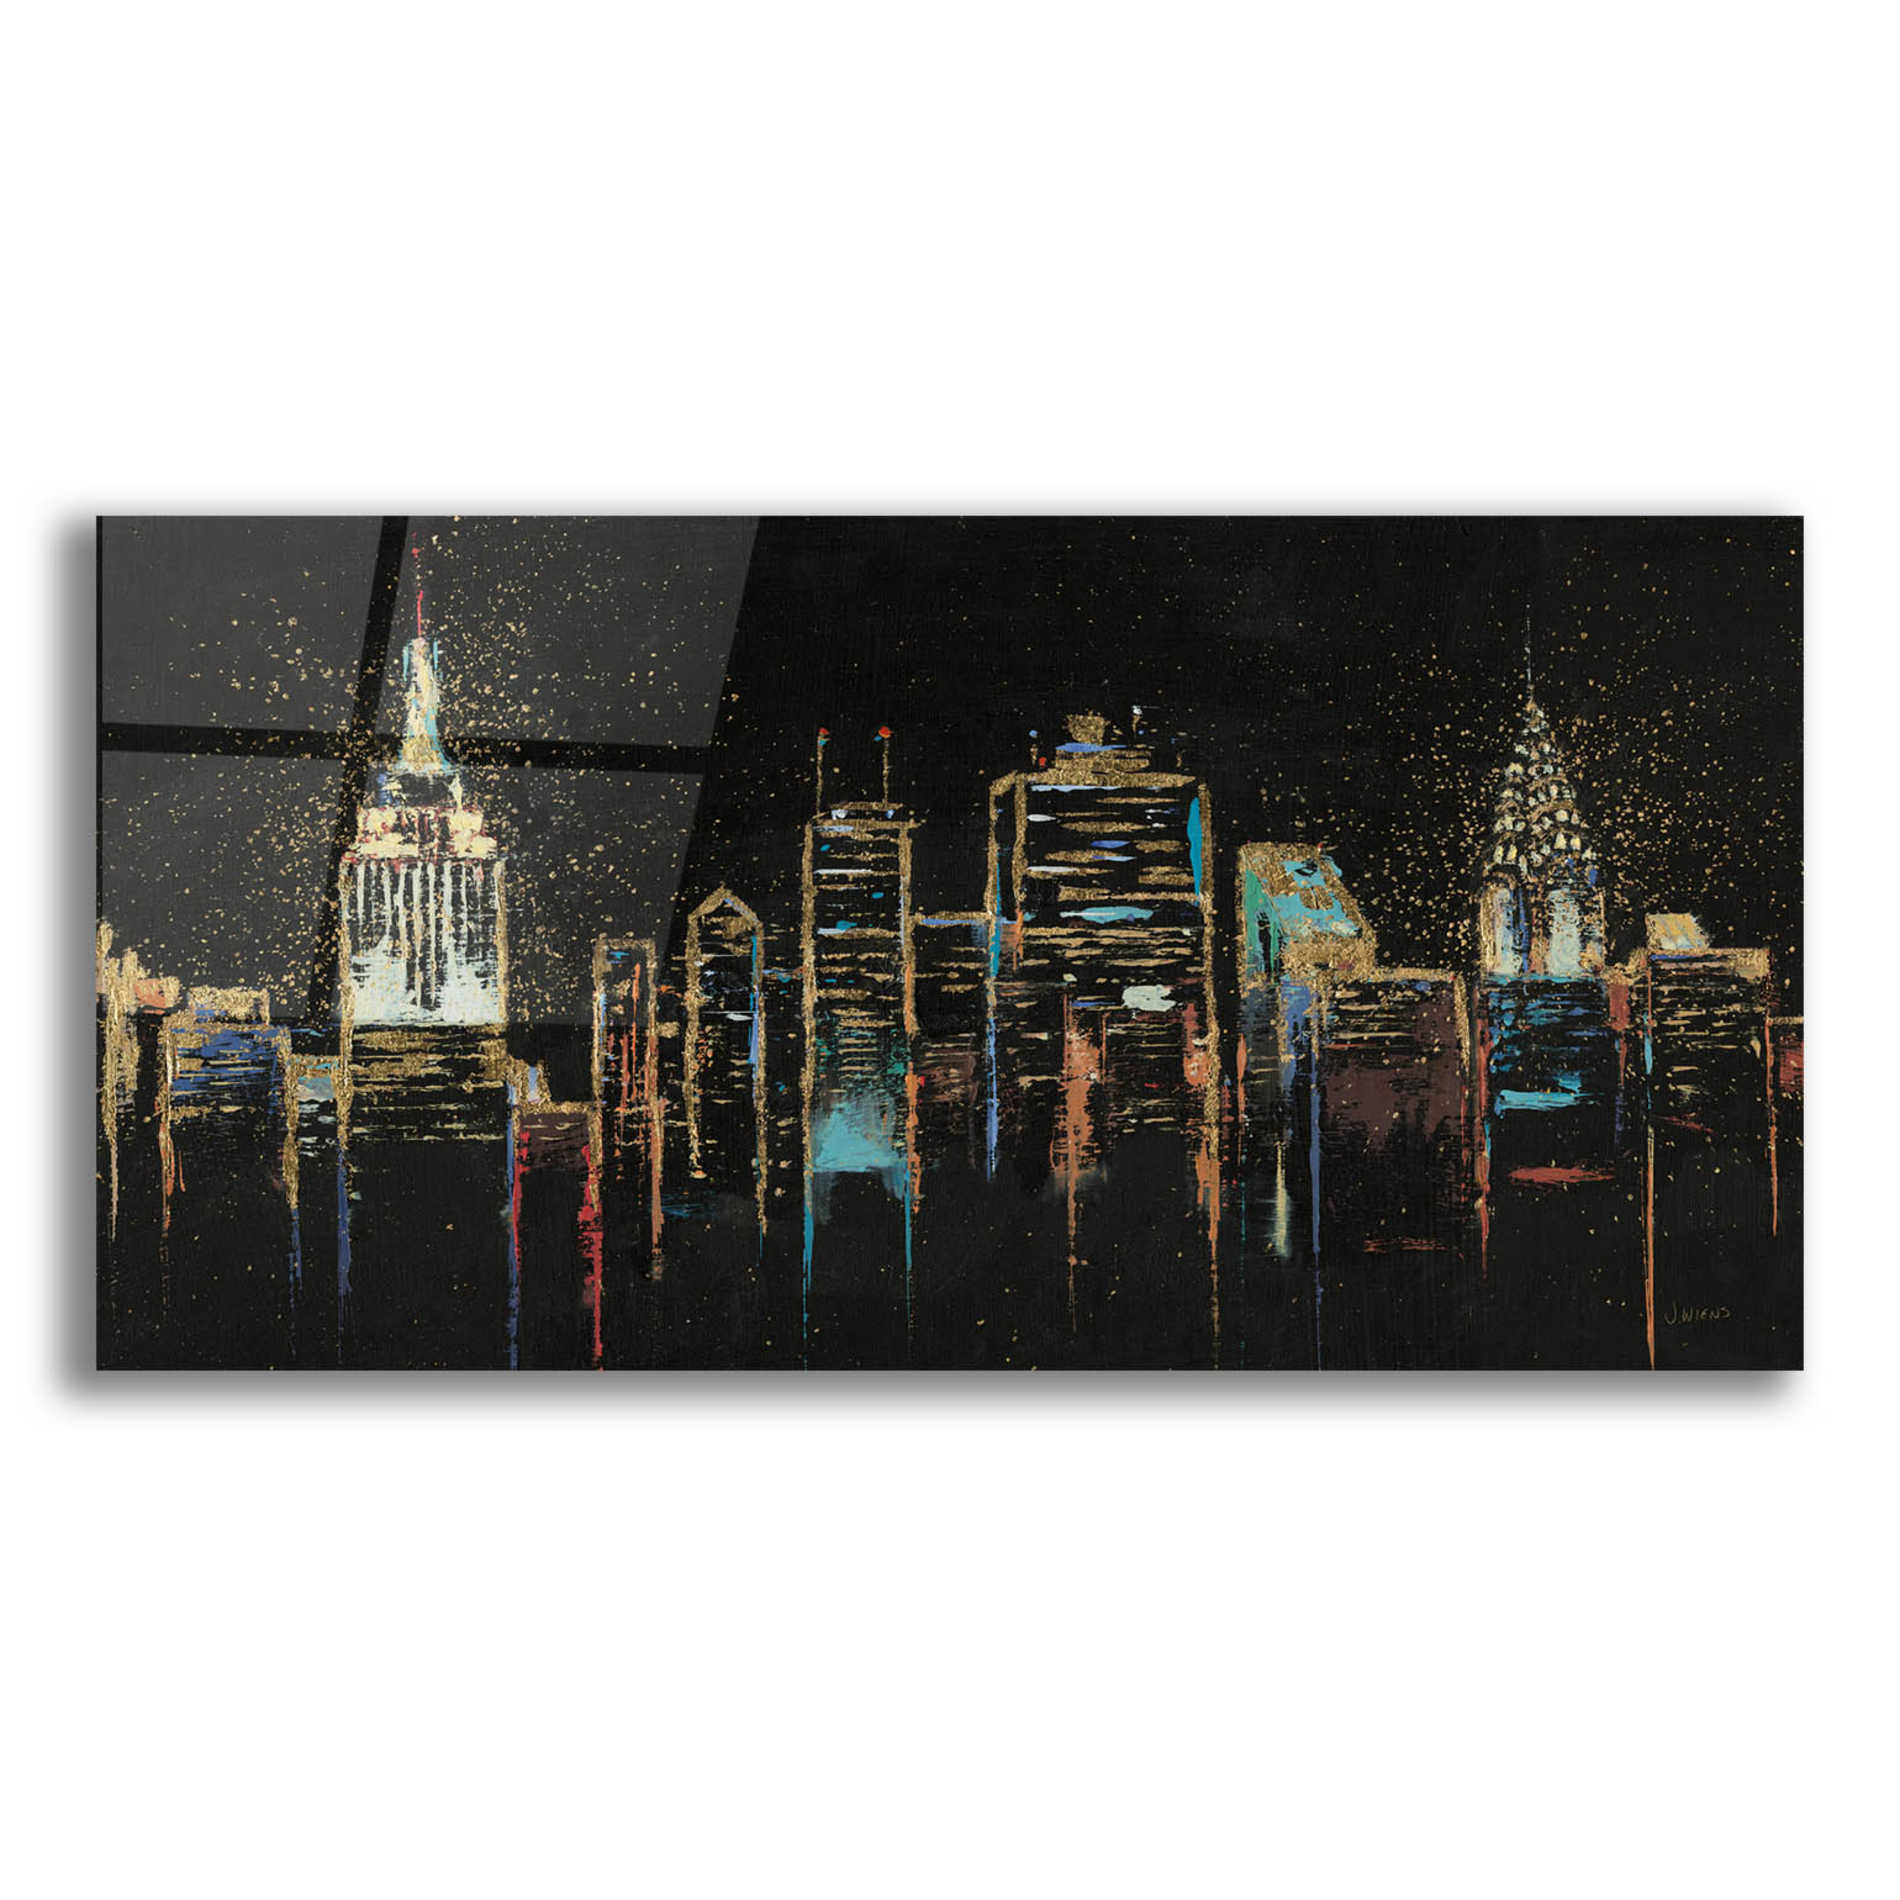 Epic Art 'Cityscape' by James Wiens, Acrylic Glass Wall Art,24x12x1.1x0,40x20x1.74x0,60x30x1.74x0